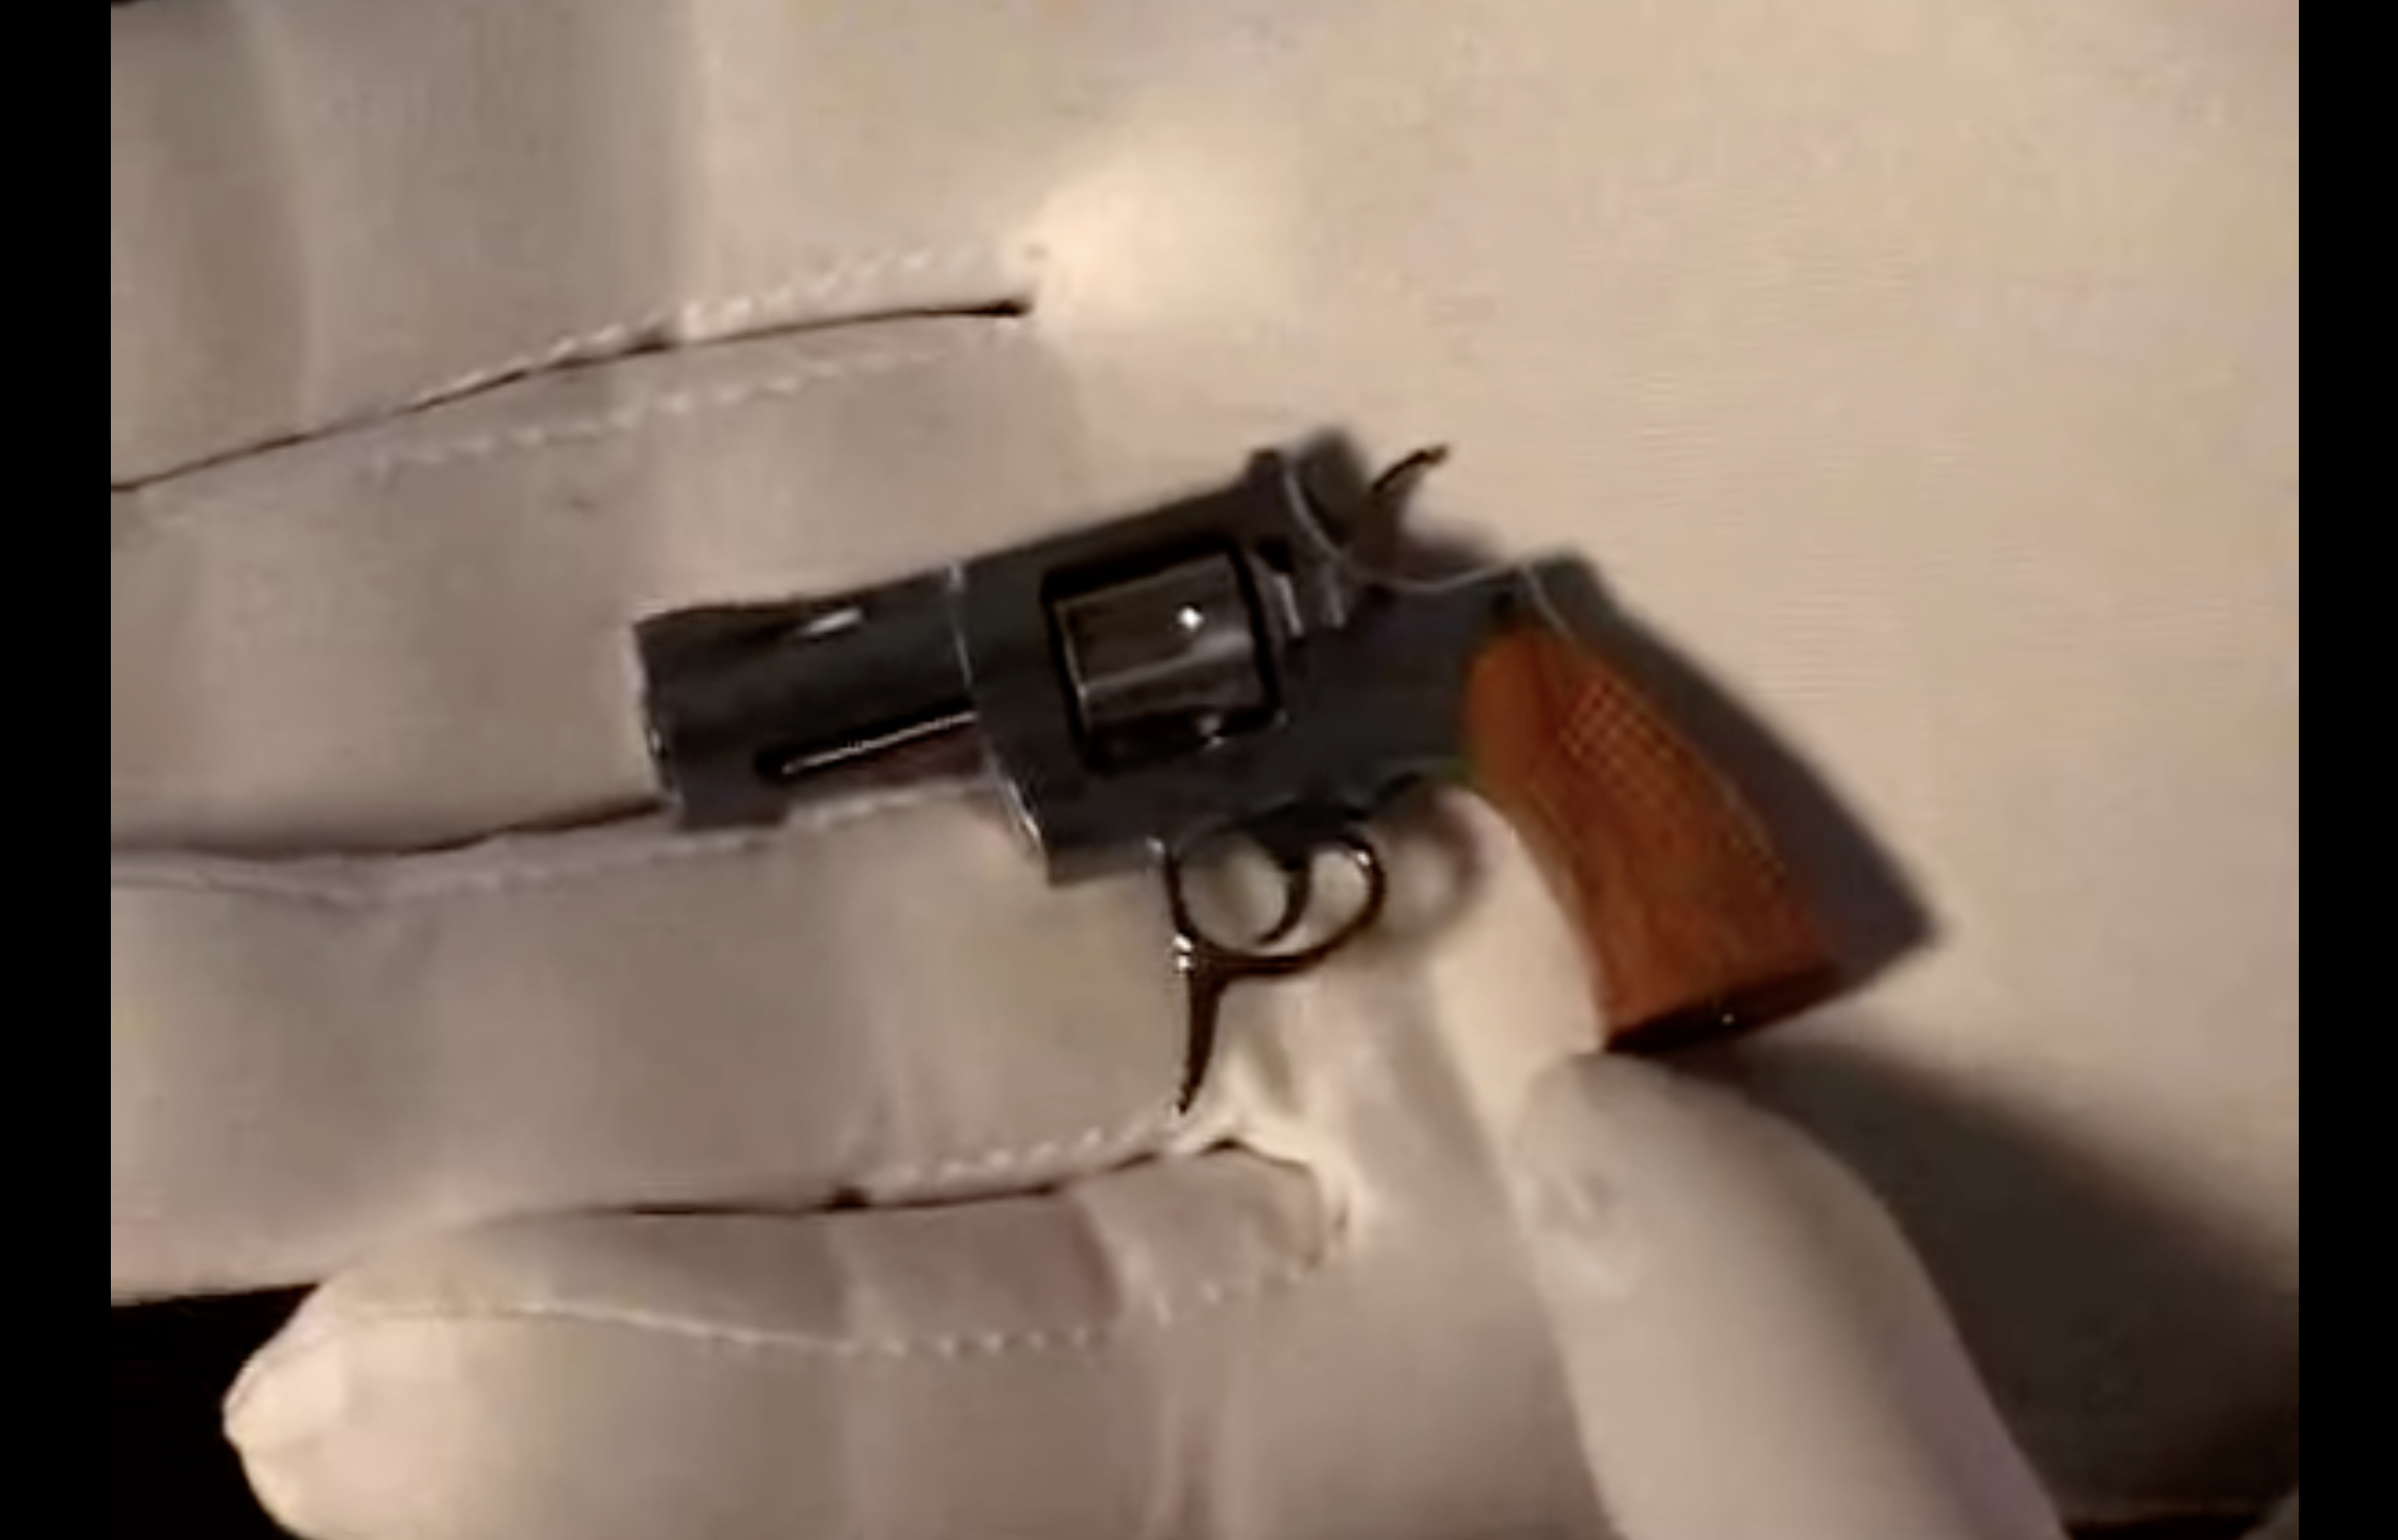 A tiny pistol